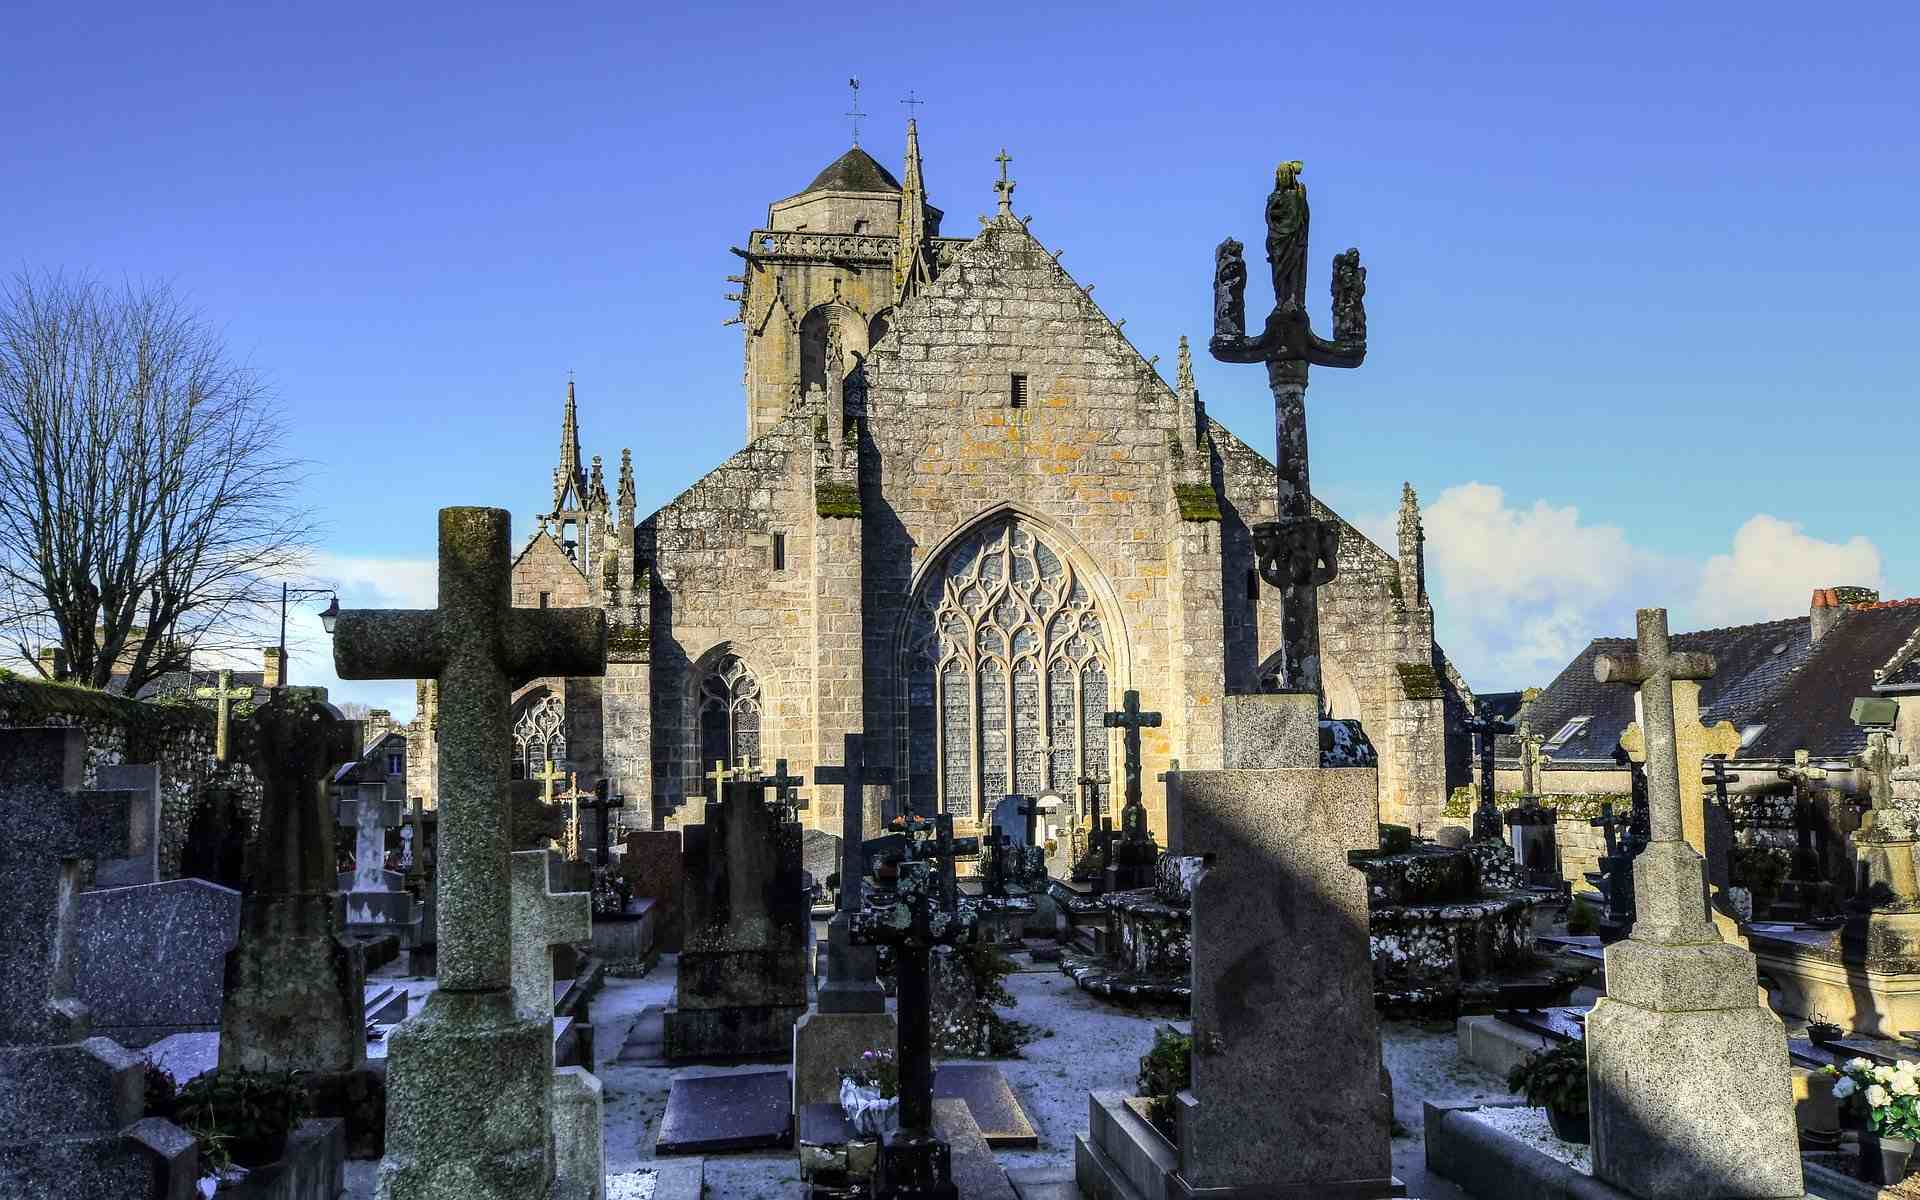 L’église Saint-Ronan et son cimetière. Au premier plan, les tombes formant le cimetière de Locronan. En arrière-plan, l’église Saint-Ronan dans la lumière du soleil. 